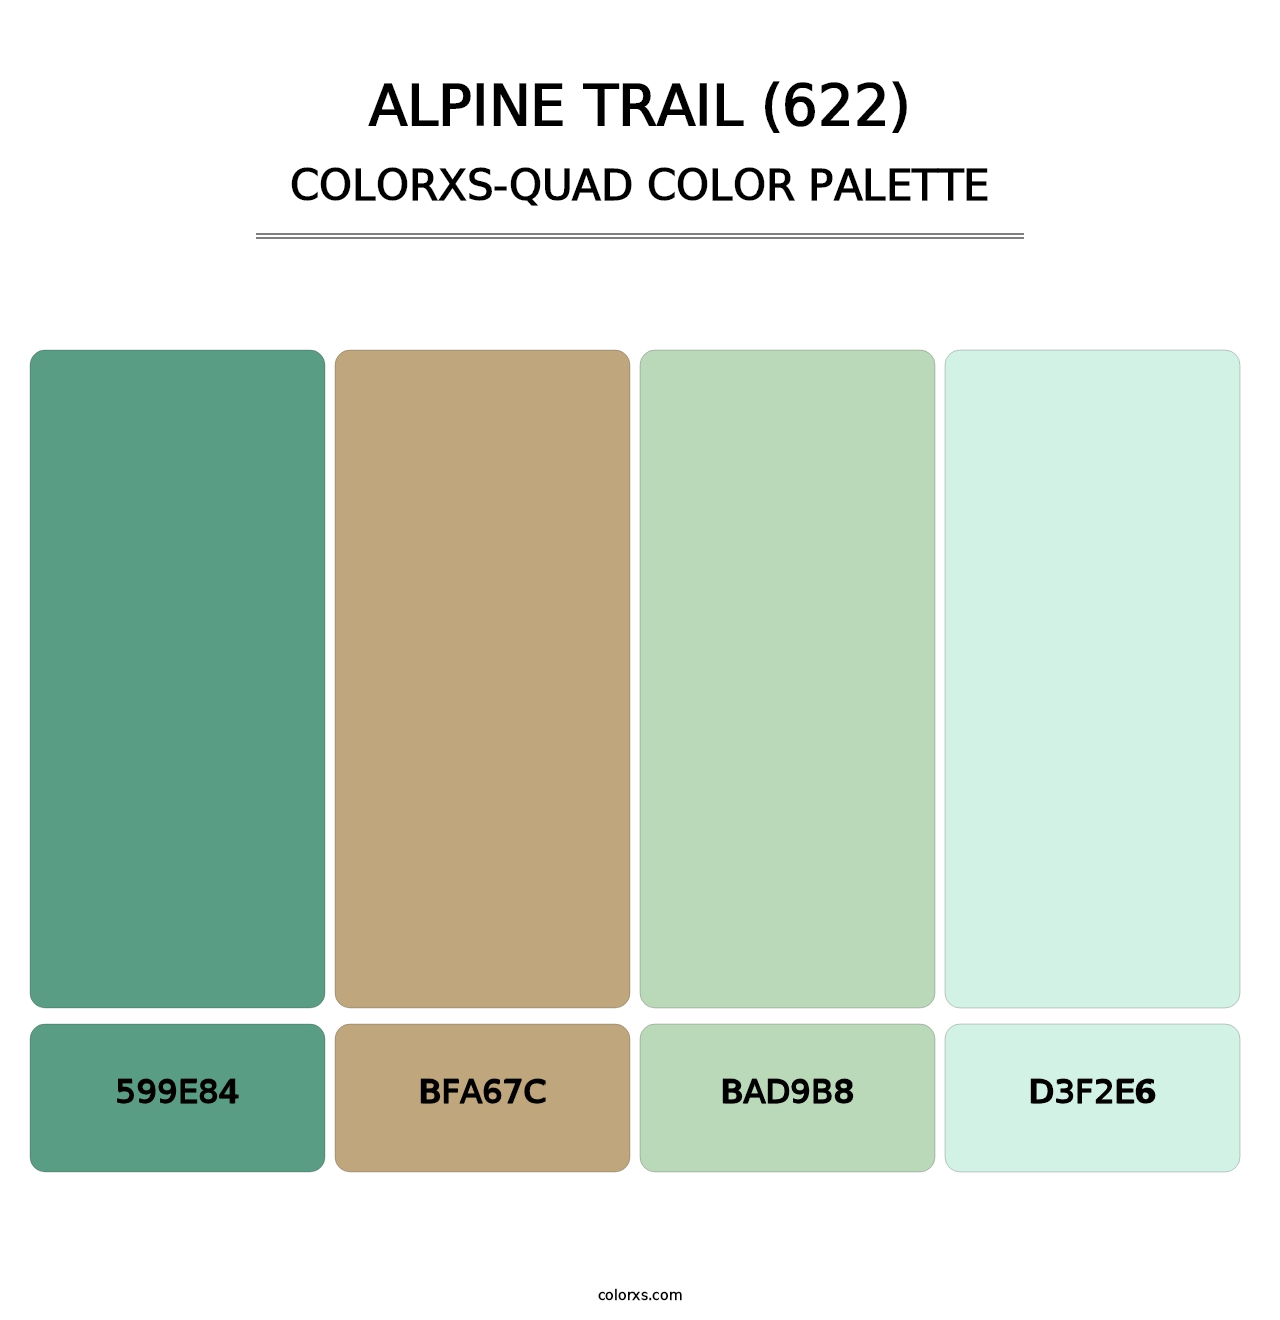 Alpine Trail (622) - Colorxs Quad Palette